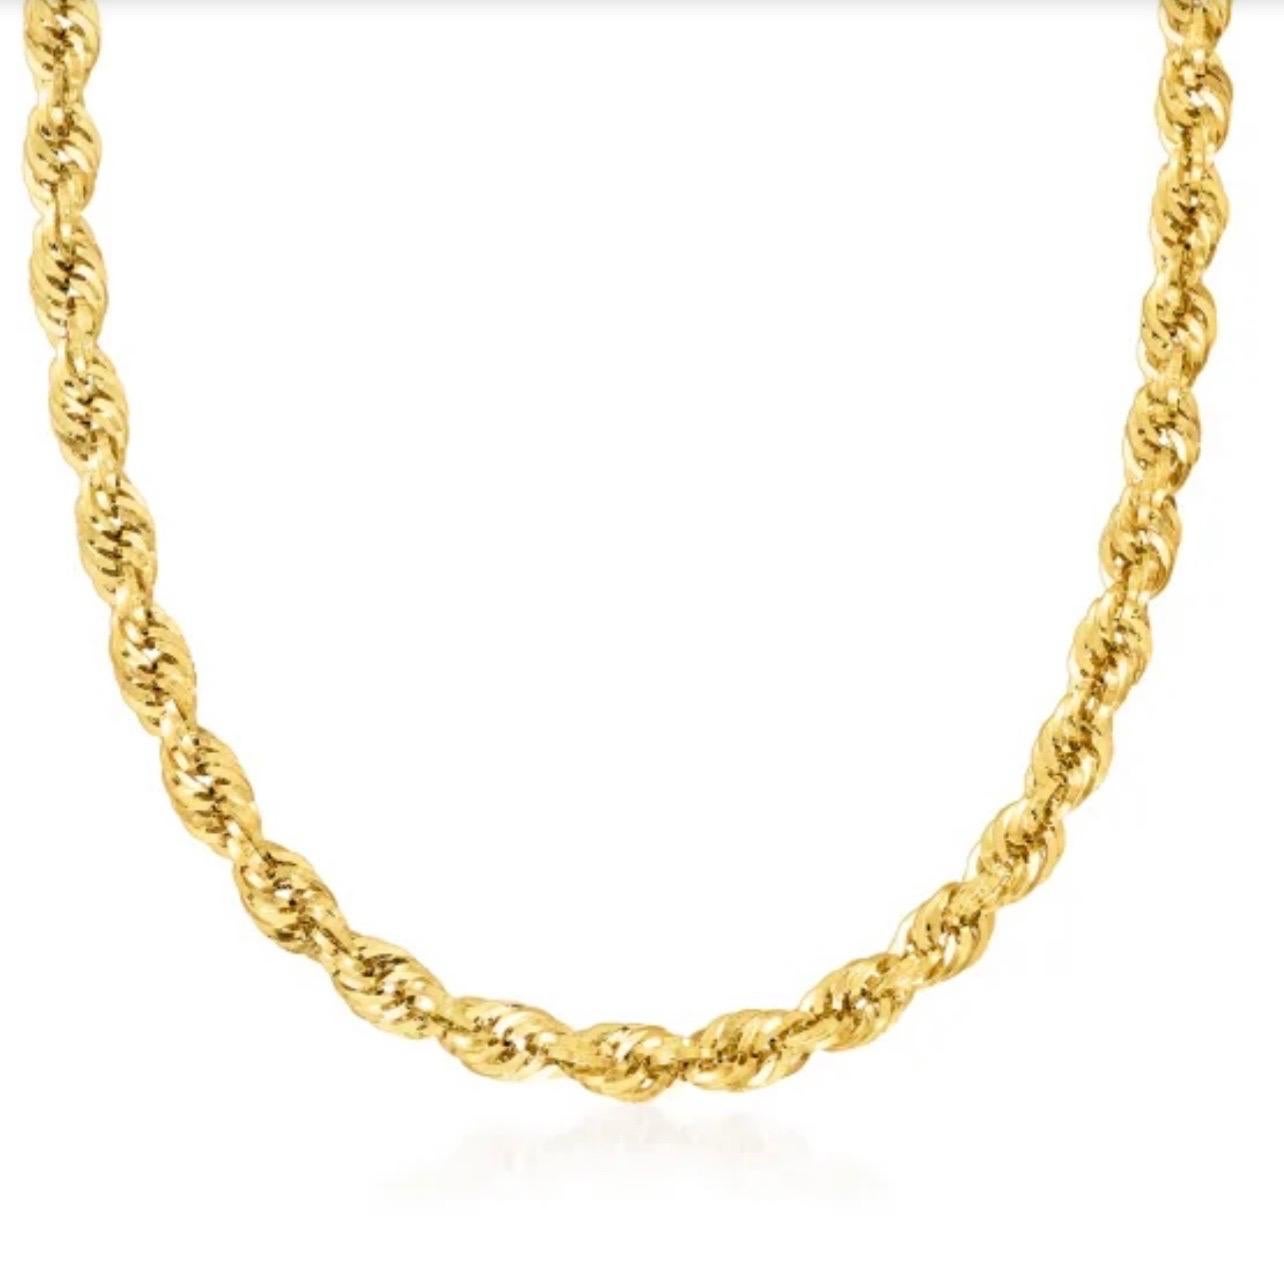 Ce collier vintage en chaîne de corde en or jaune 14 carats est un magnifique bijou. Le collier mesure 26 pouces de long et 3,6 mm de large, ce qui en fait une belle pièce d'apparat. Son poids de 20,5 grammes en fait une pièce substantielle qui